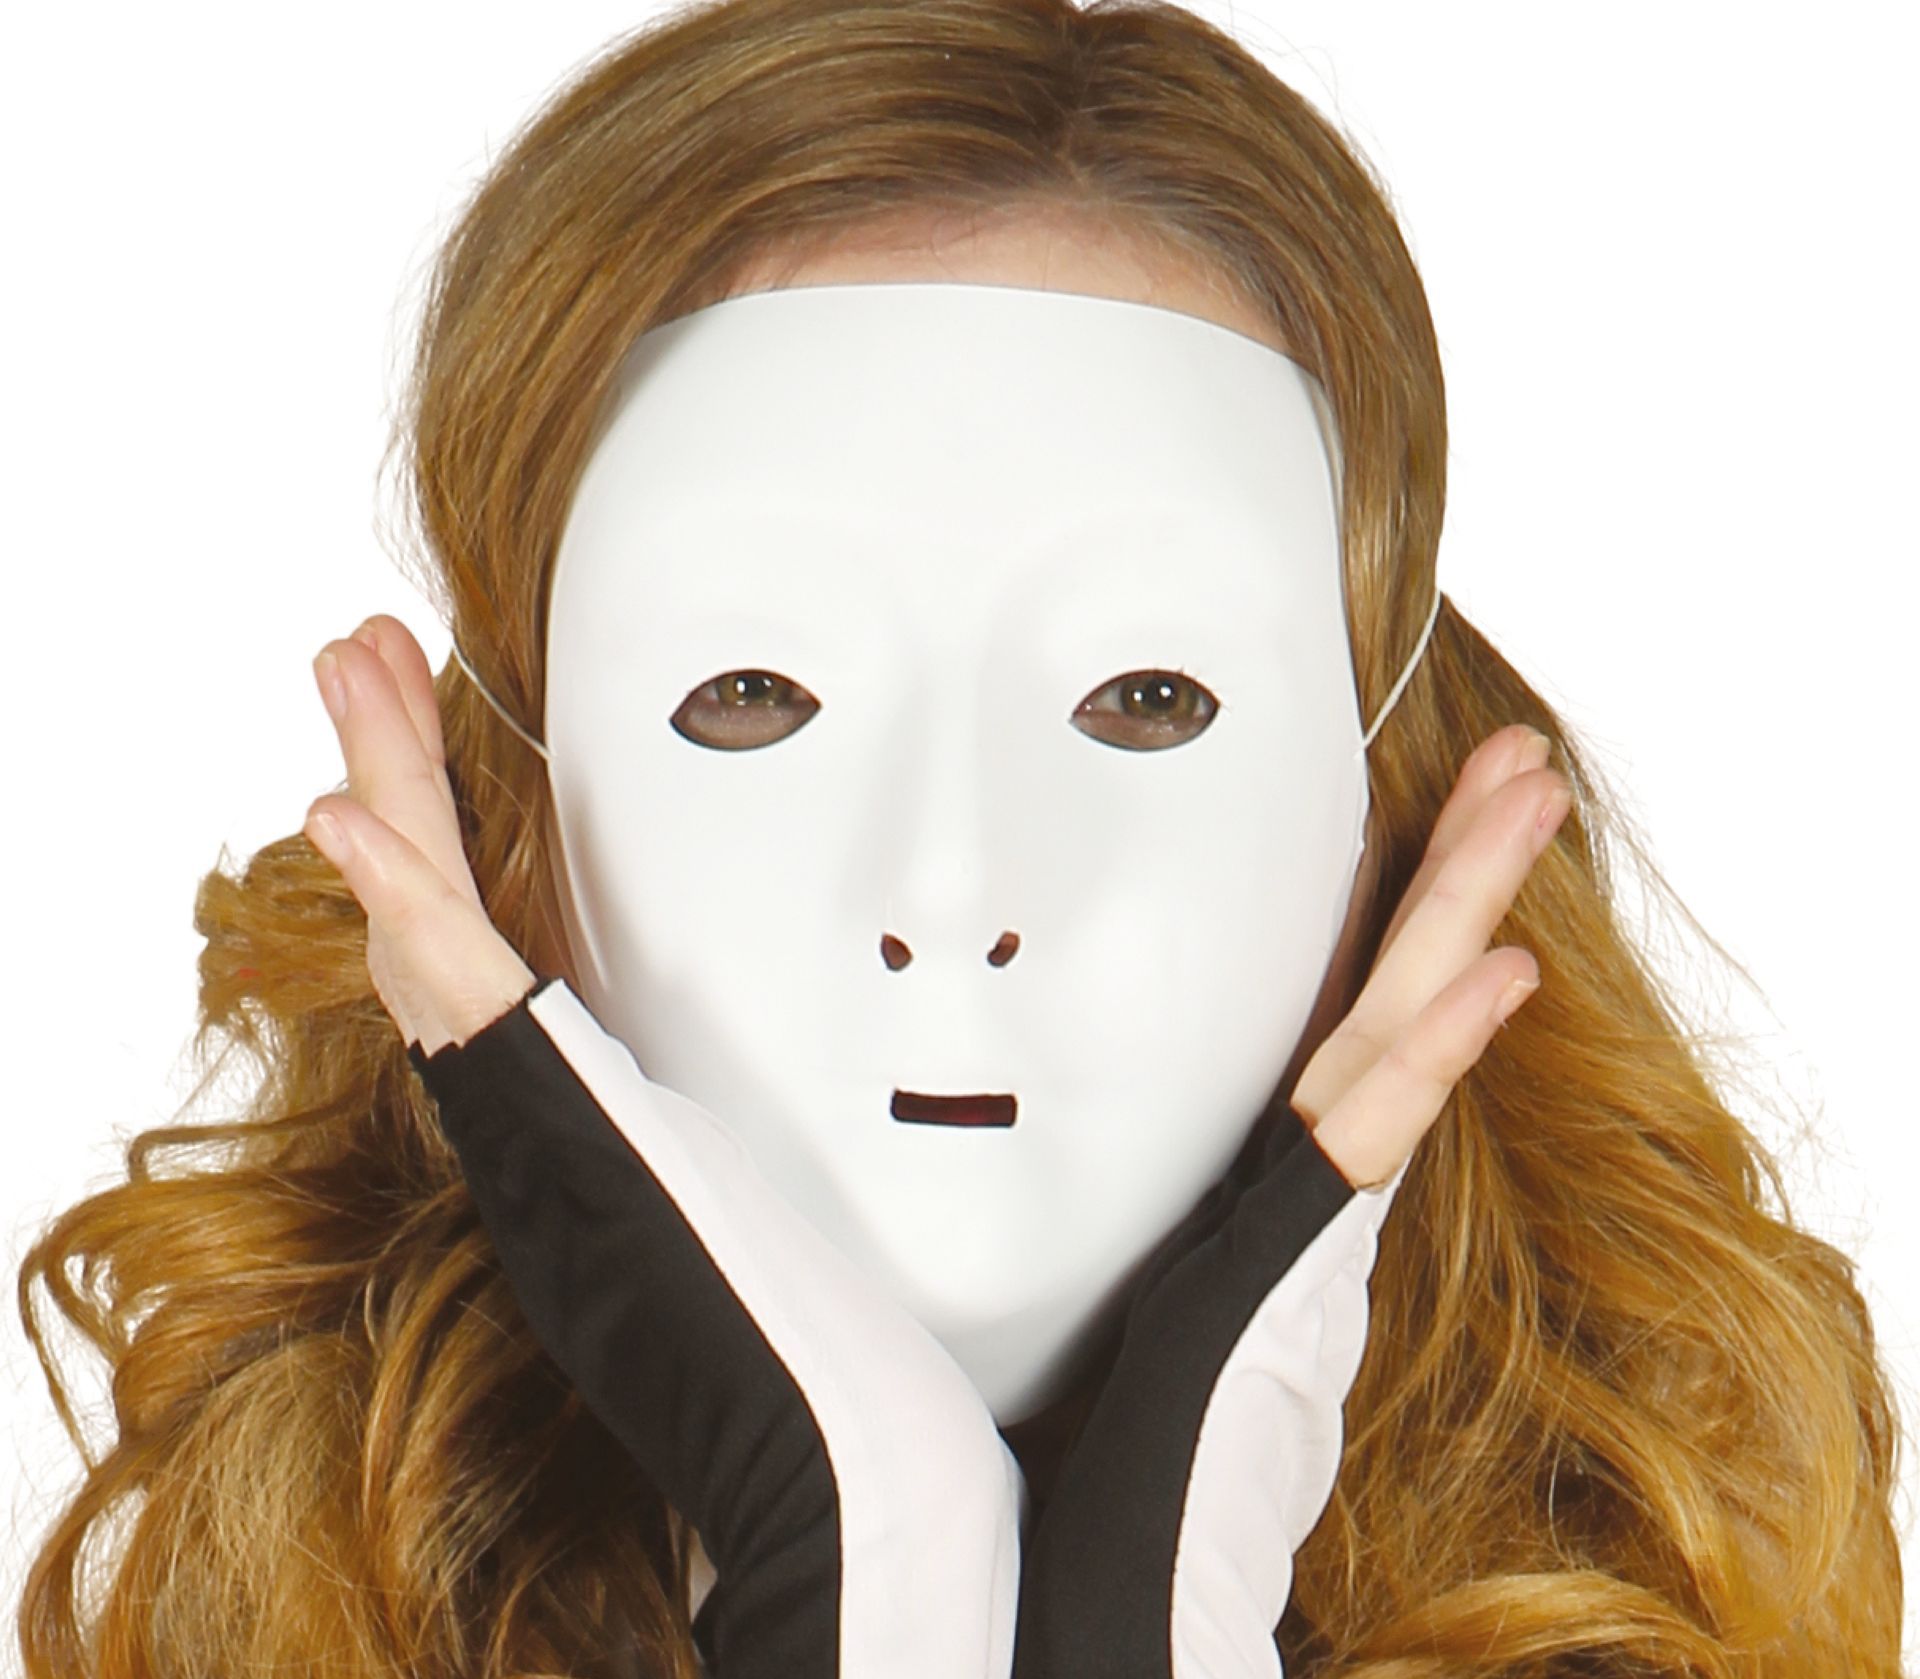 Wit gezicht masker